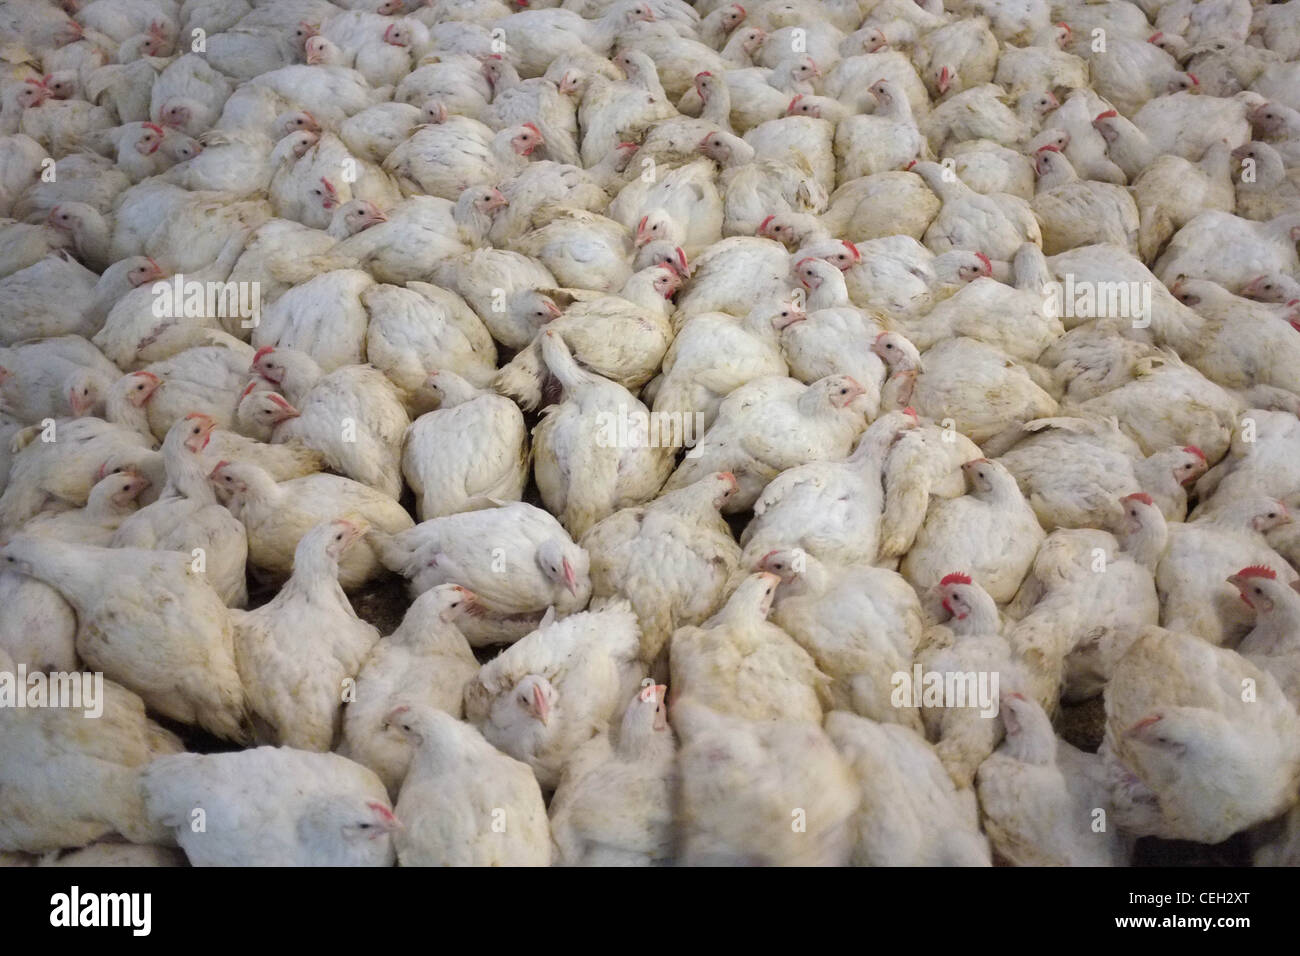 Los pollos de carne en un entorno de agricultura intensiva Foto de stock